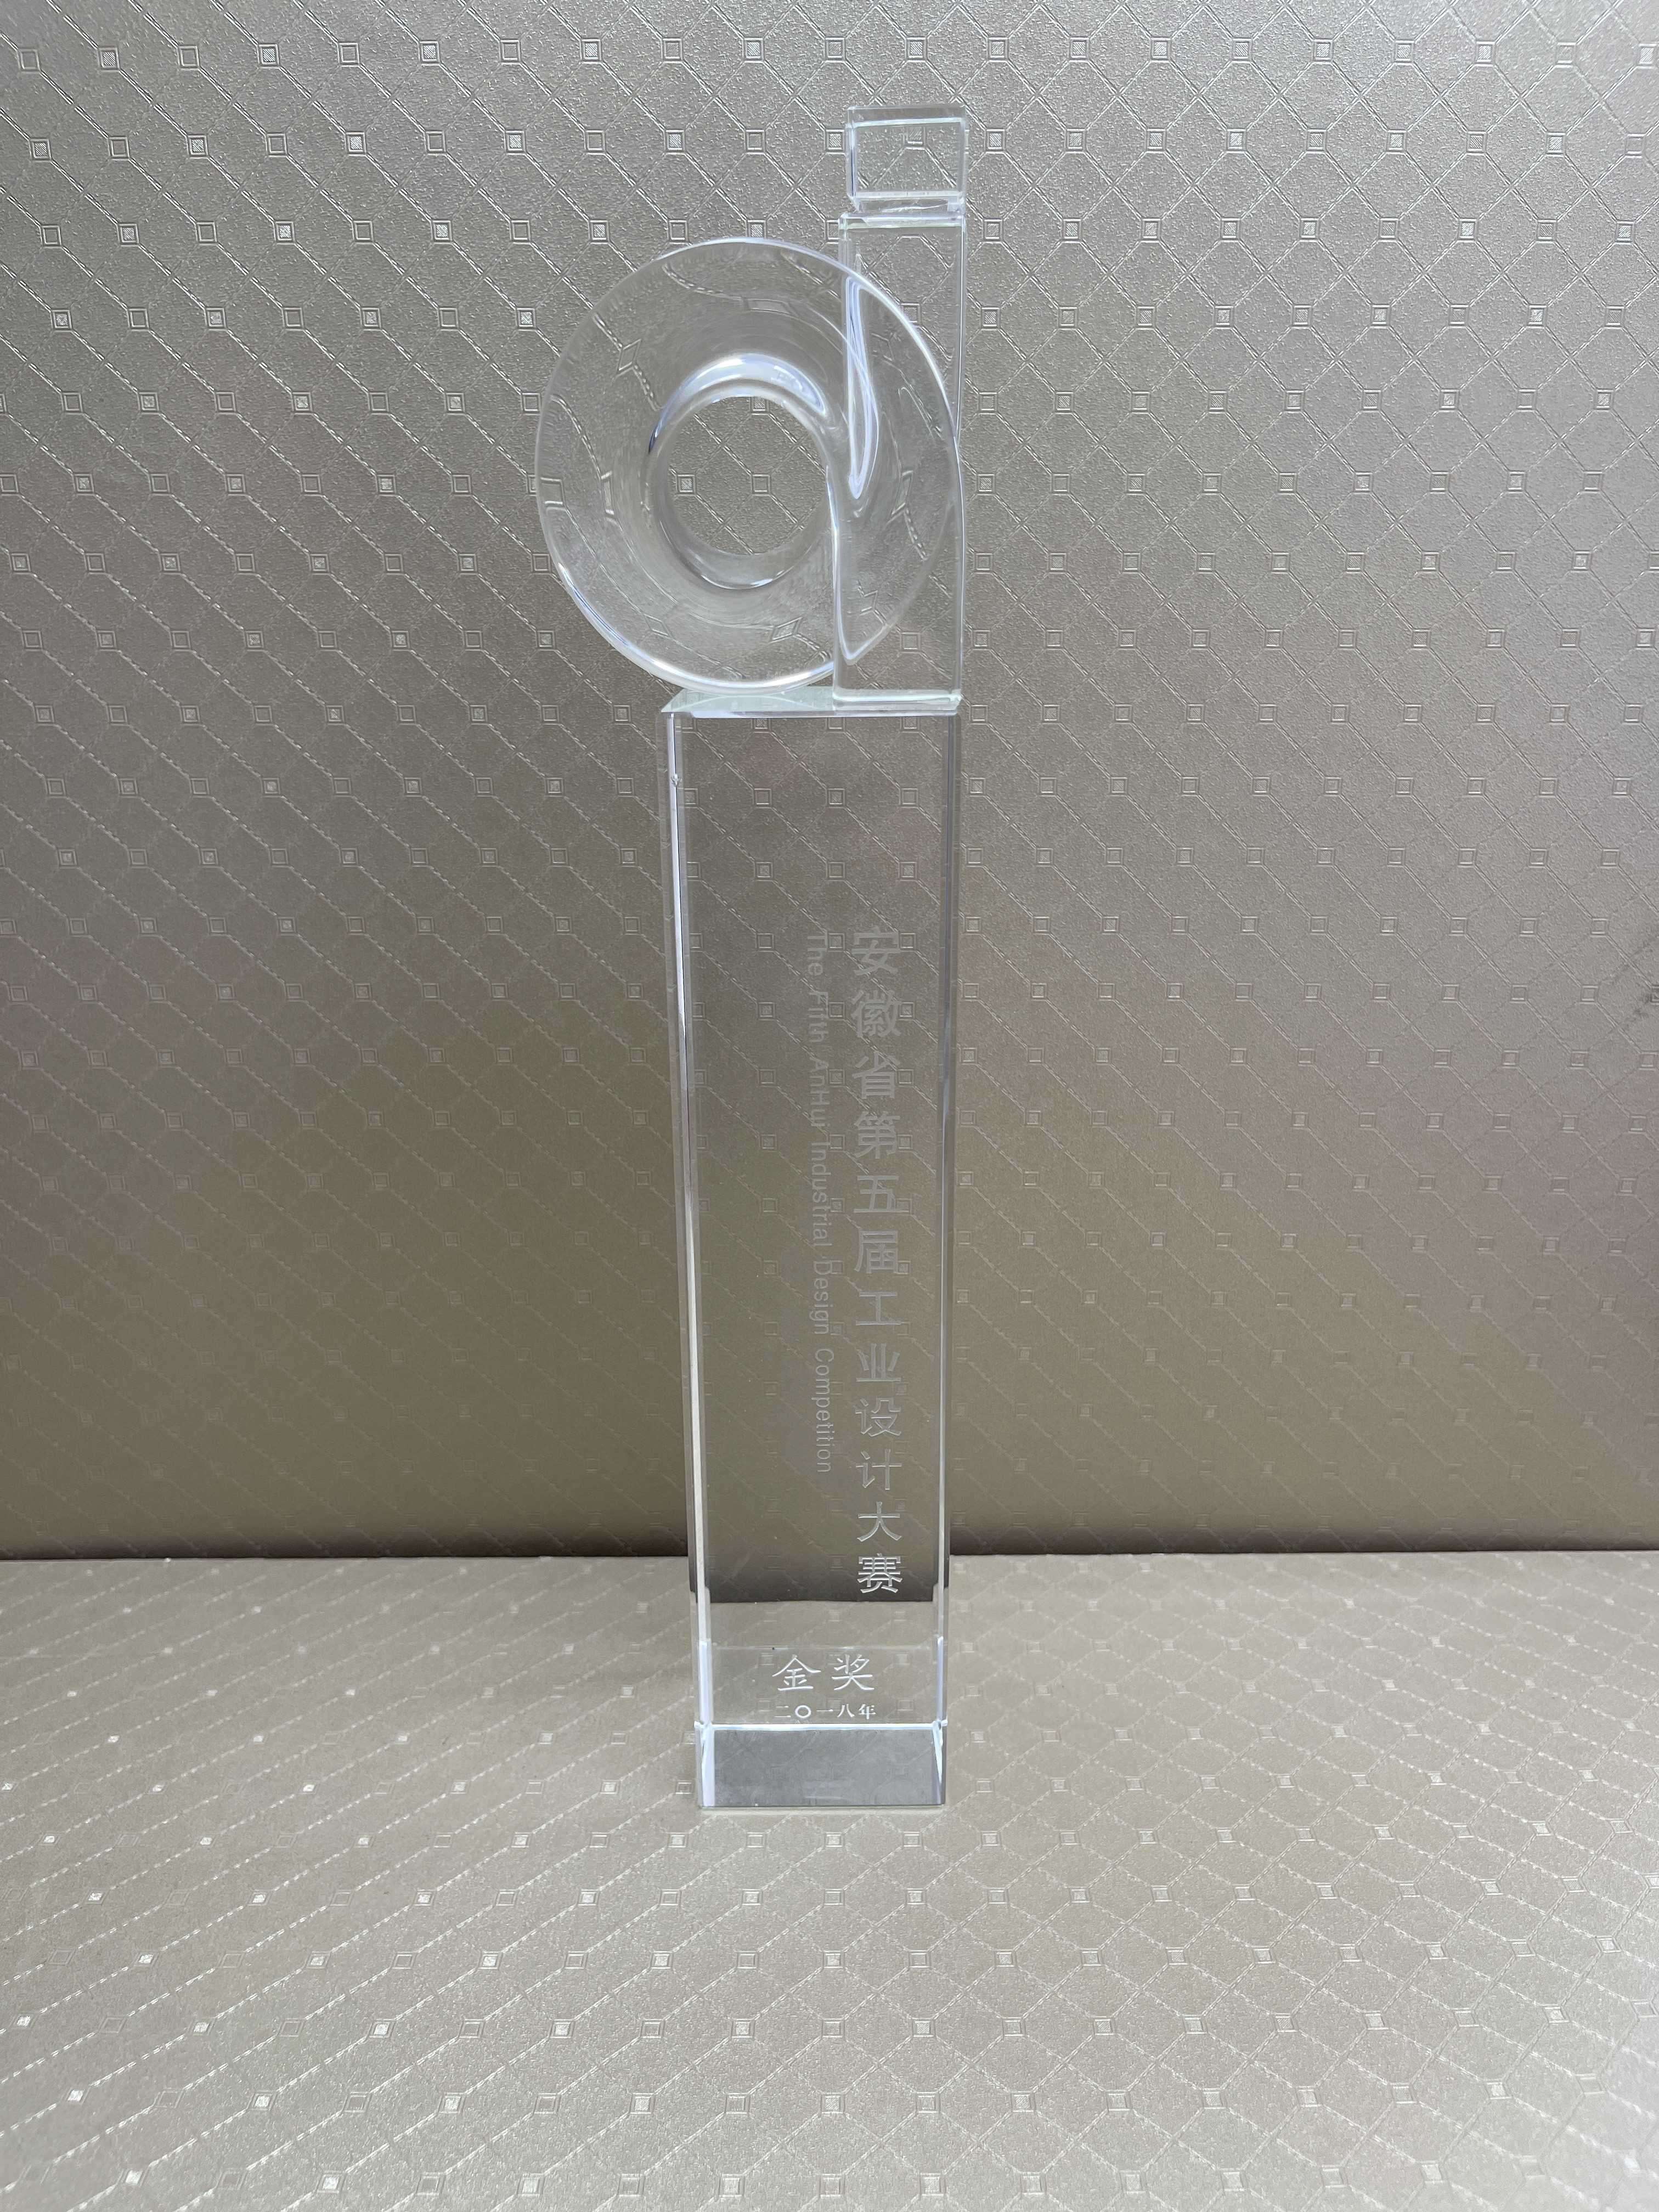 2018年11月聚乳酸纖維AB被獲得安徽省第五屆工業設計大賽產品類金獎